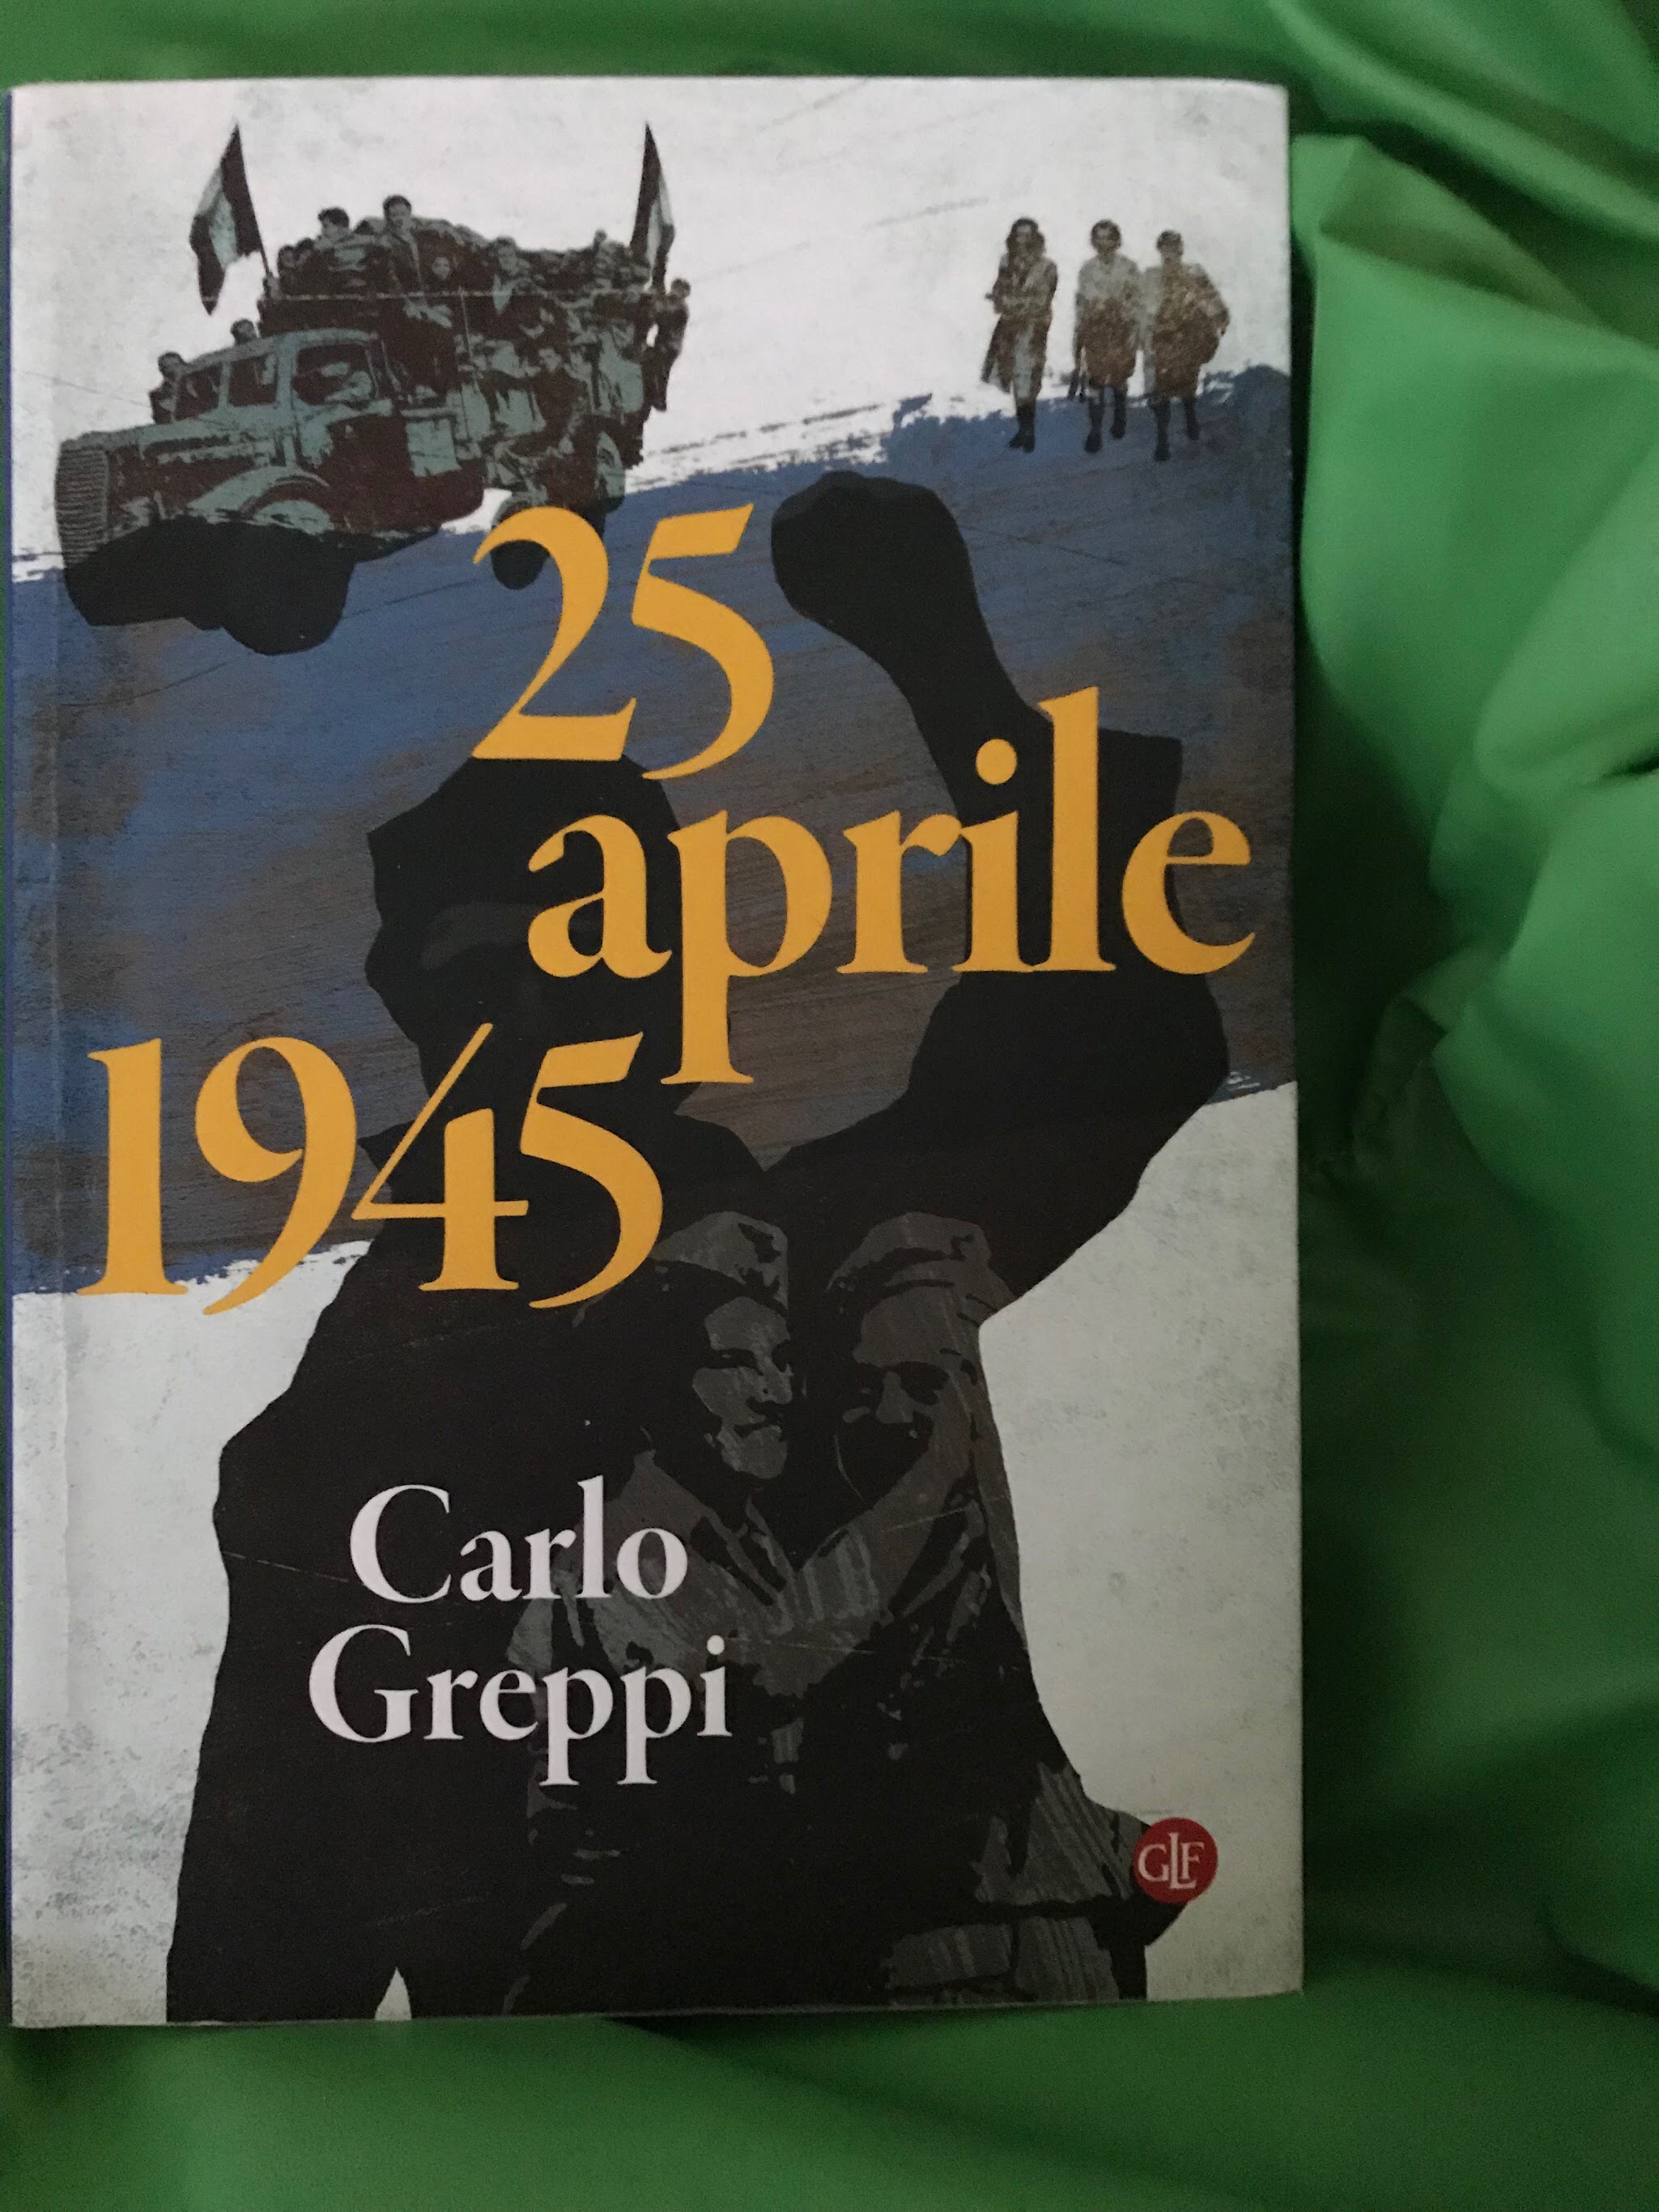 25 aprile 1945, Milano, Arcivescovado: arrendersi o perire.